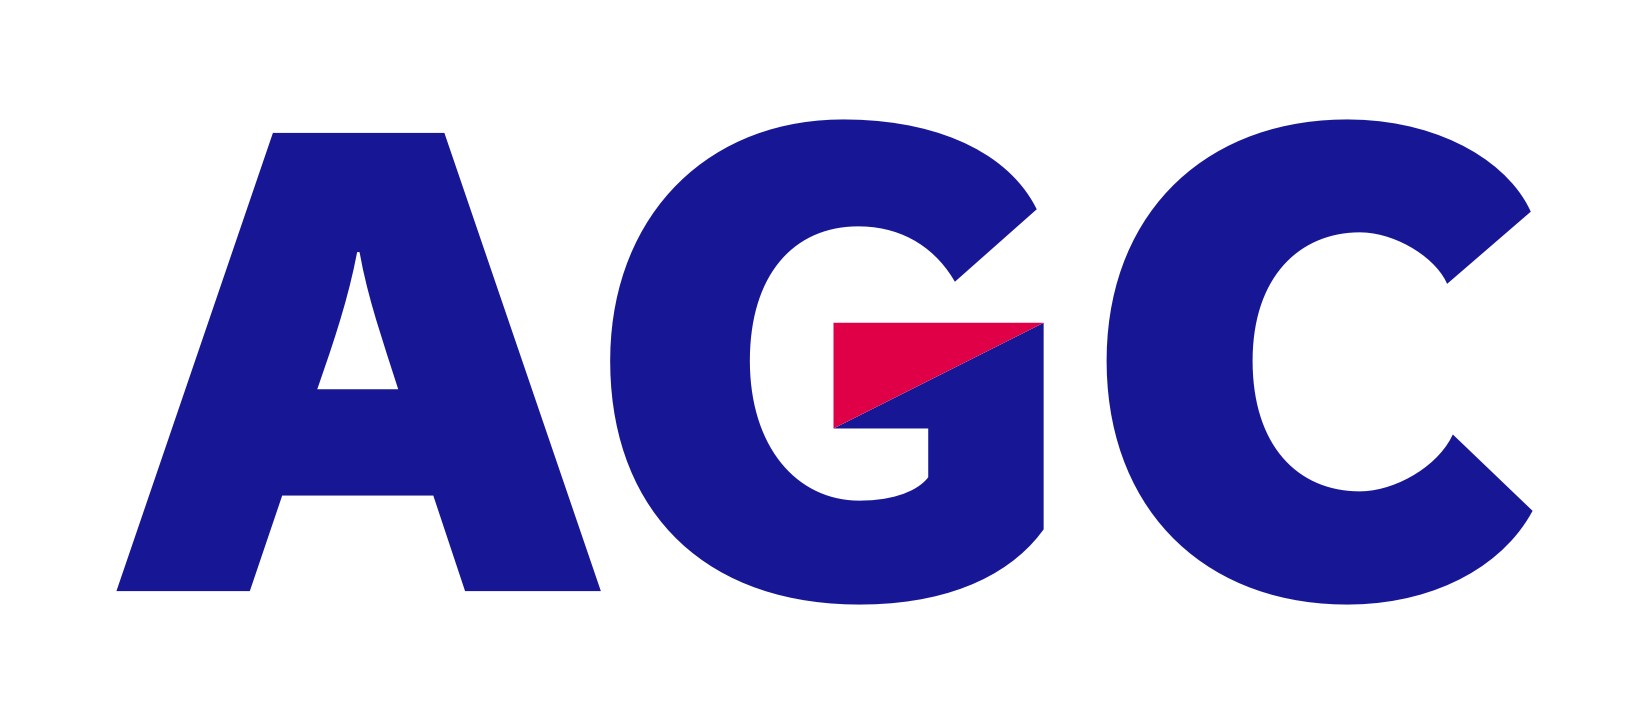 logo-agc-glass-europe